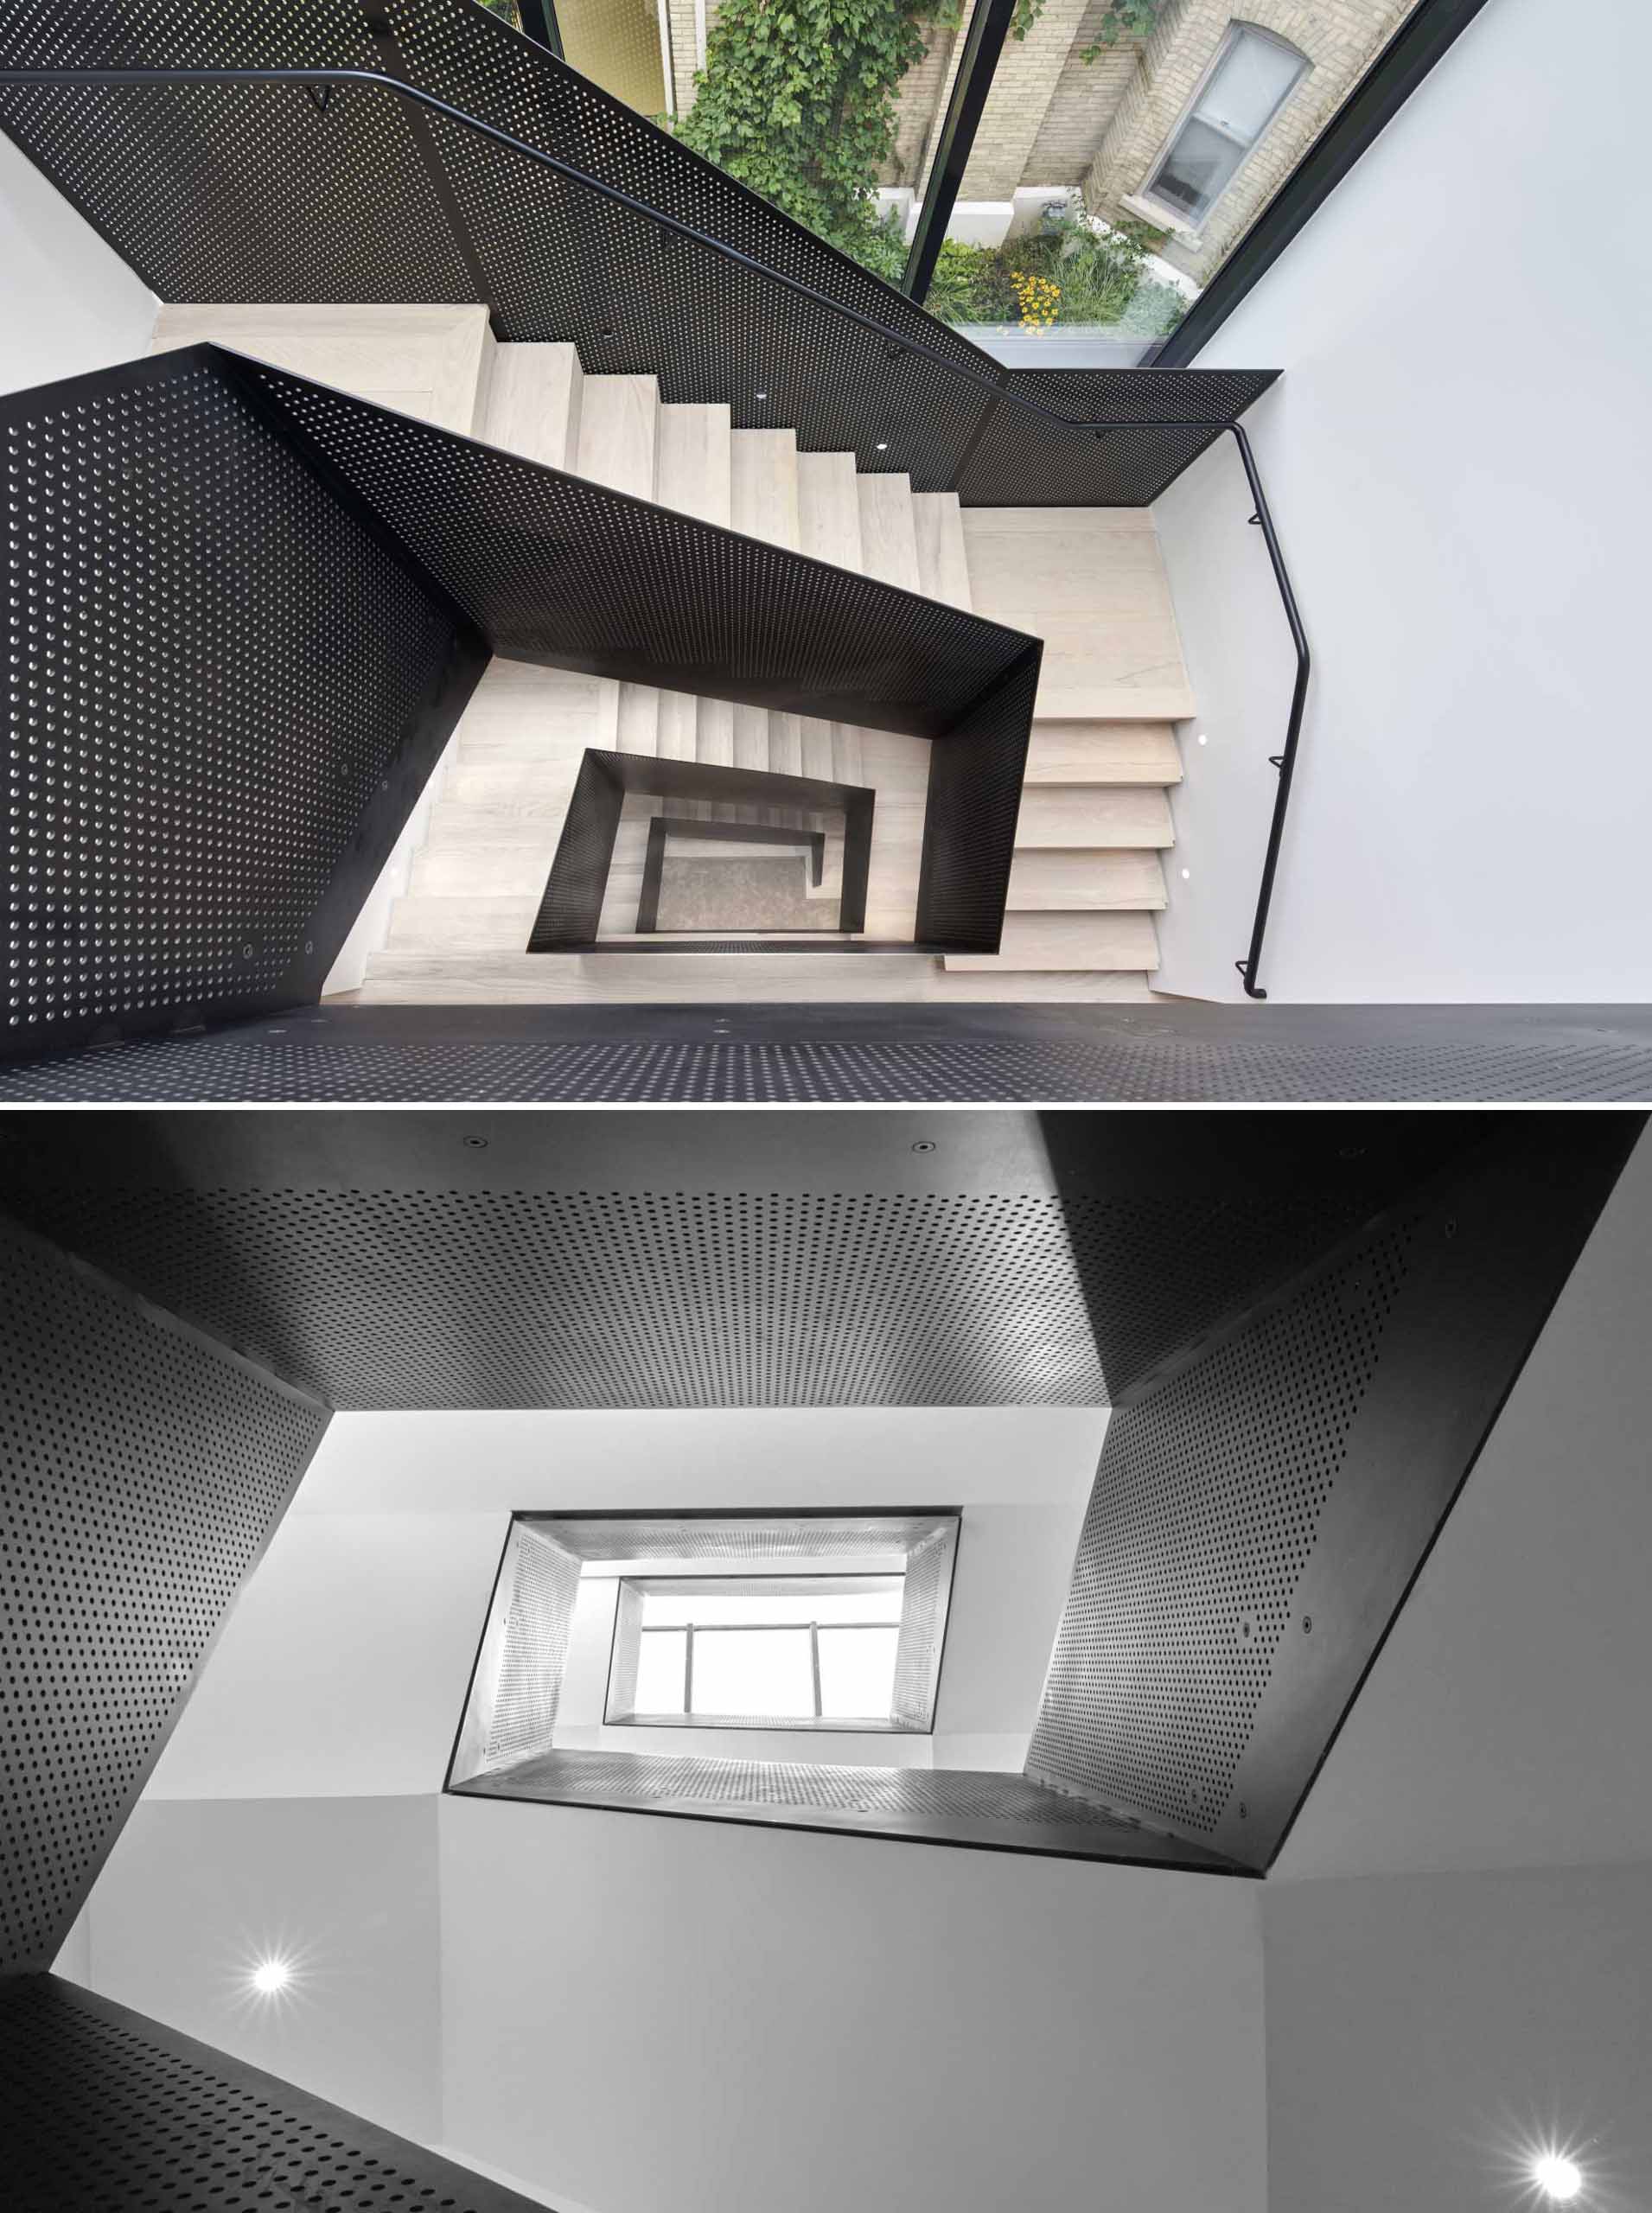 Деревянная лестница с перфорированными черными металлическими перилами соединяет несколько уровней дома.